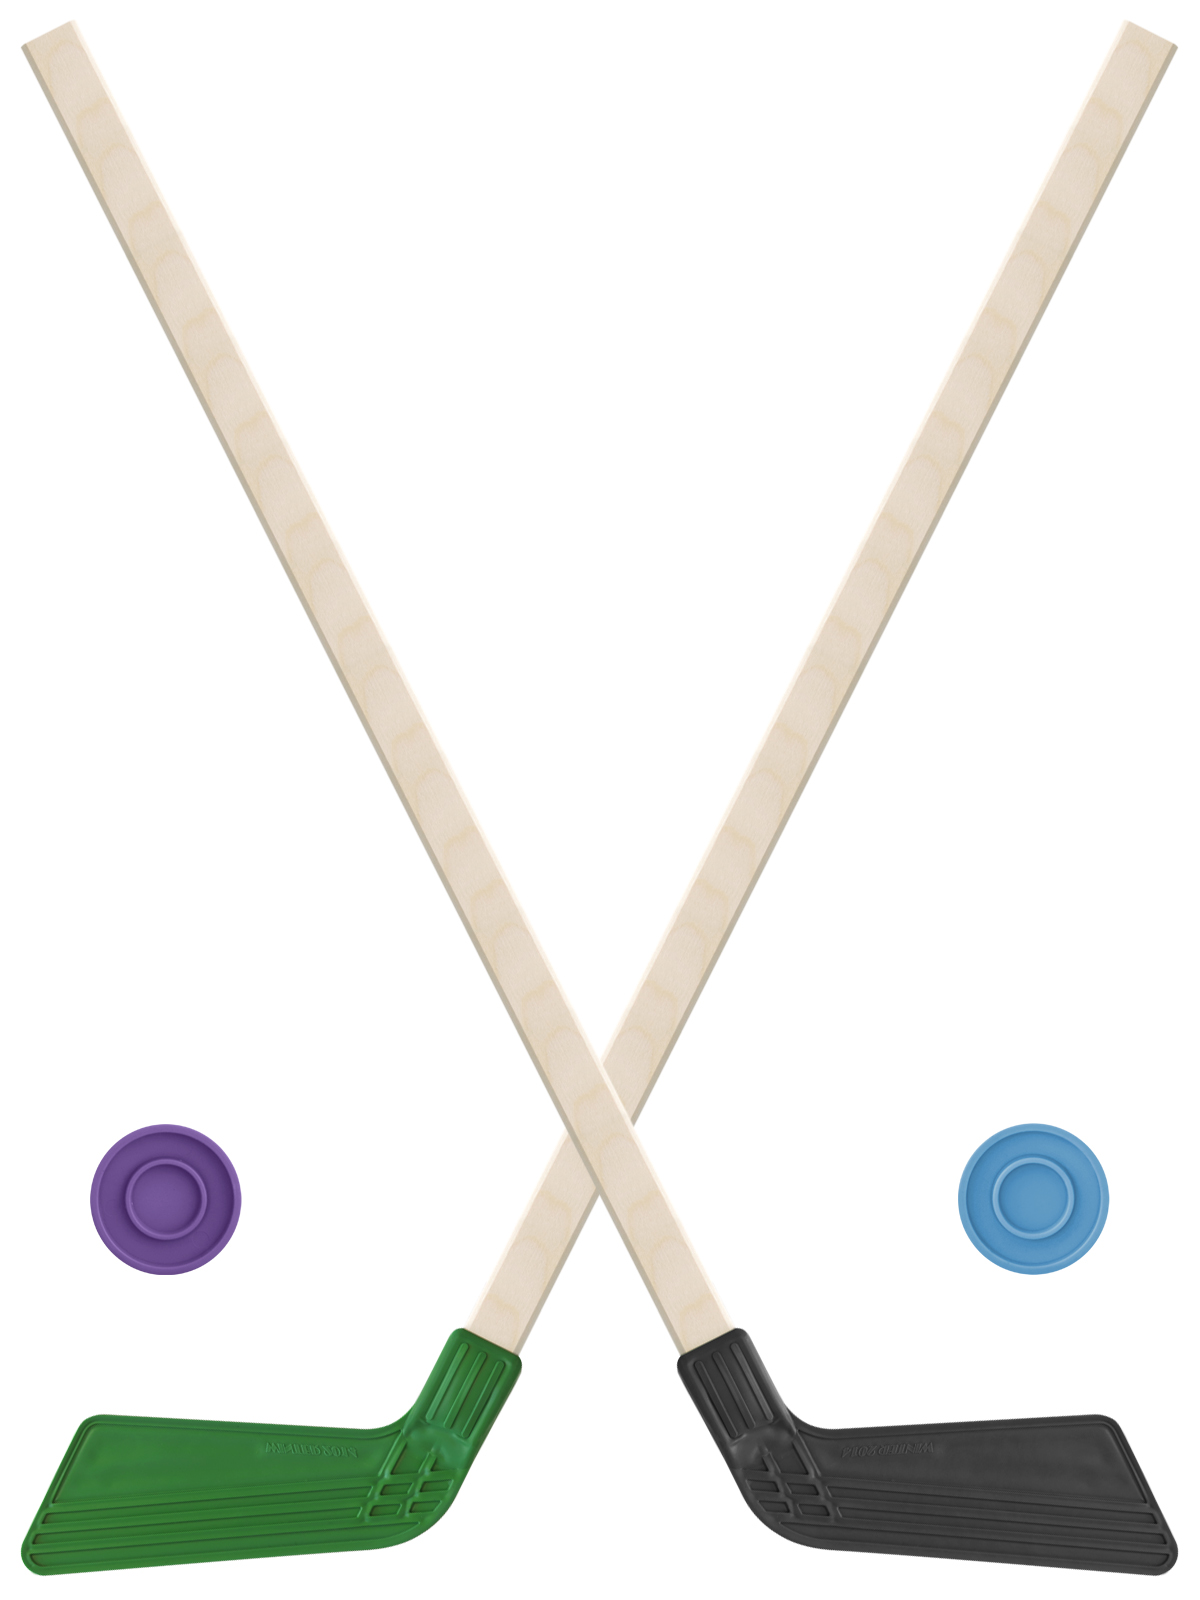 Детский хоккейный набор Задира-плюс клюшка хоккейная детская 80см (зел и черн) 2шт +2шайбы клюшка флорбольная acito moooo 33 yellow 80 round левый